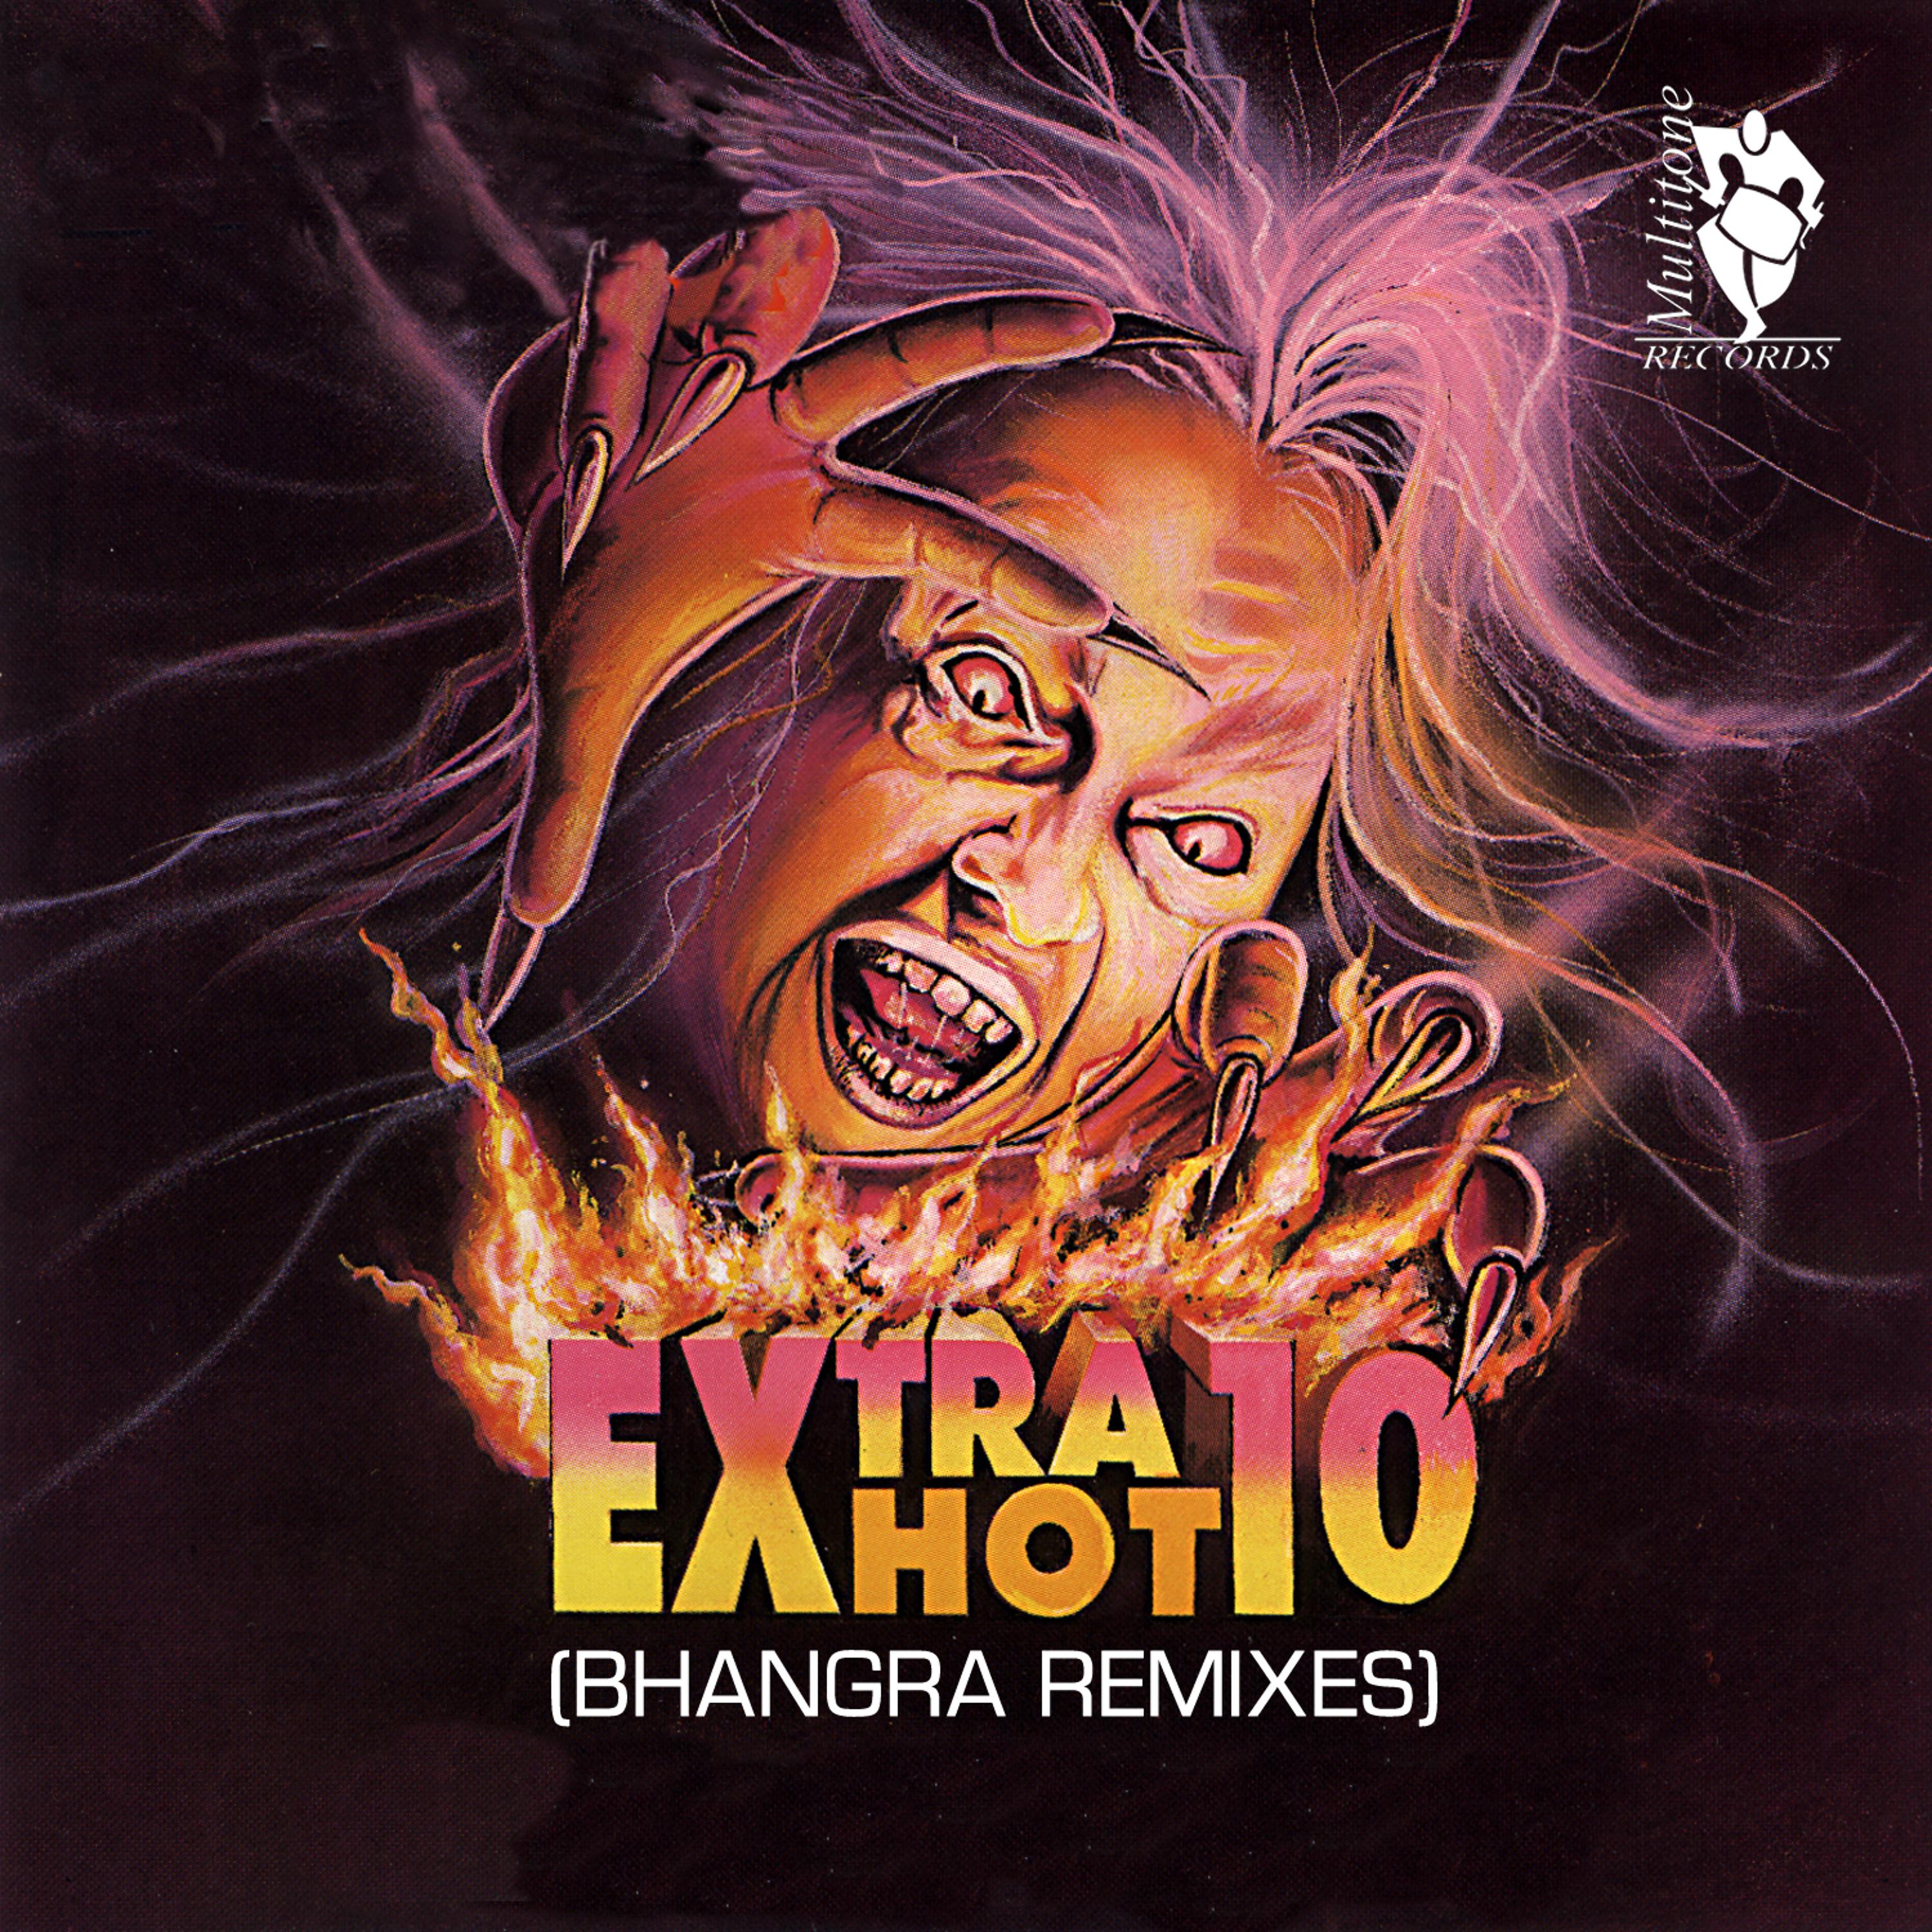 Постер альбома Extra Hot 10 (Bhangra Remixes)